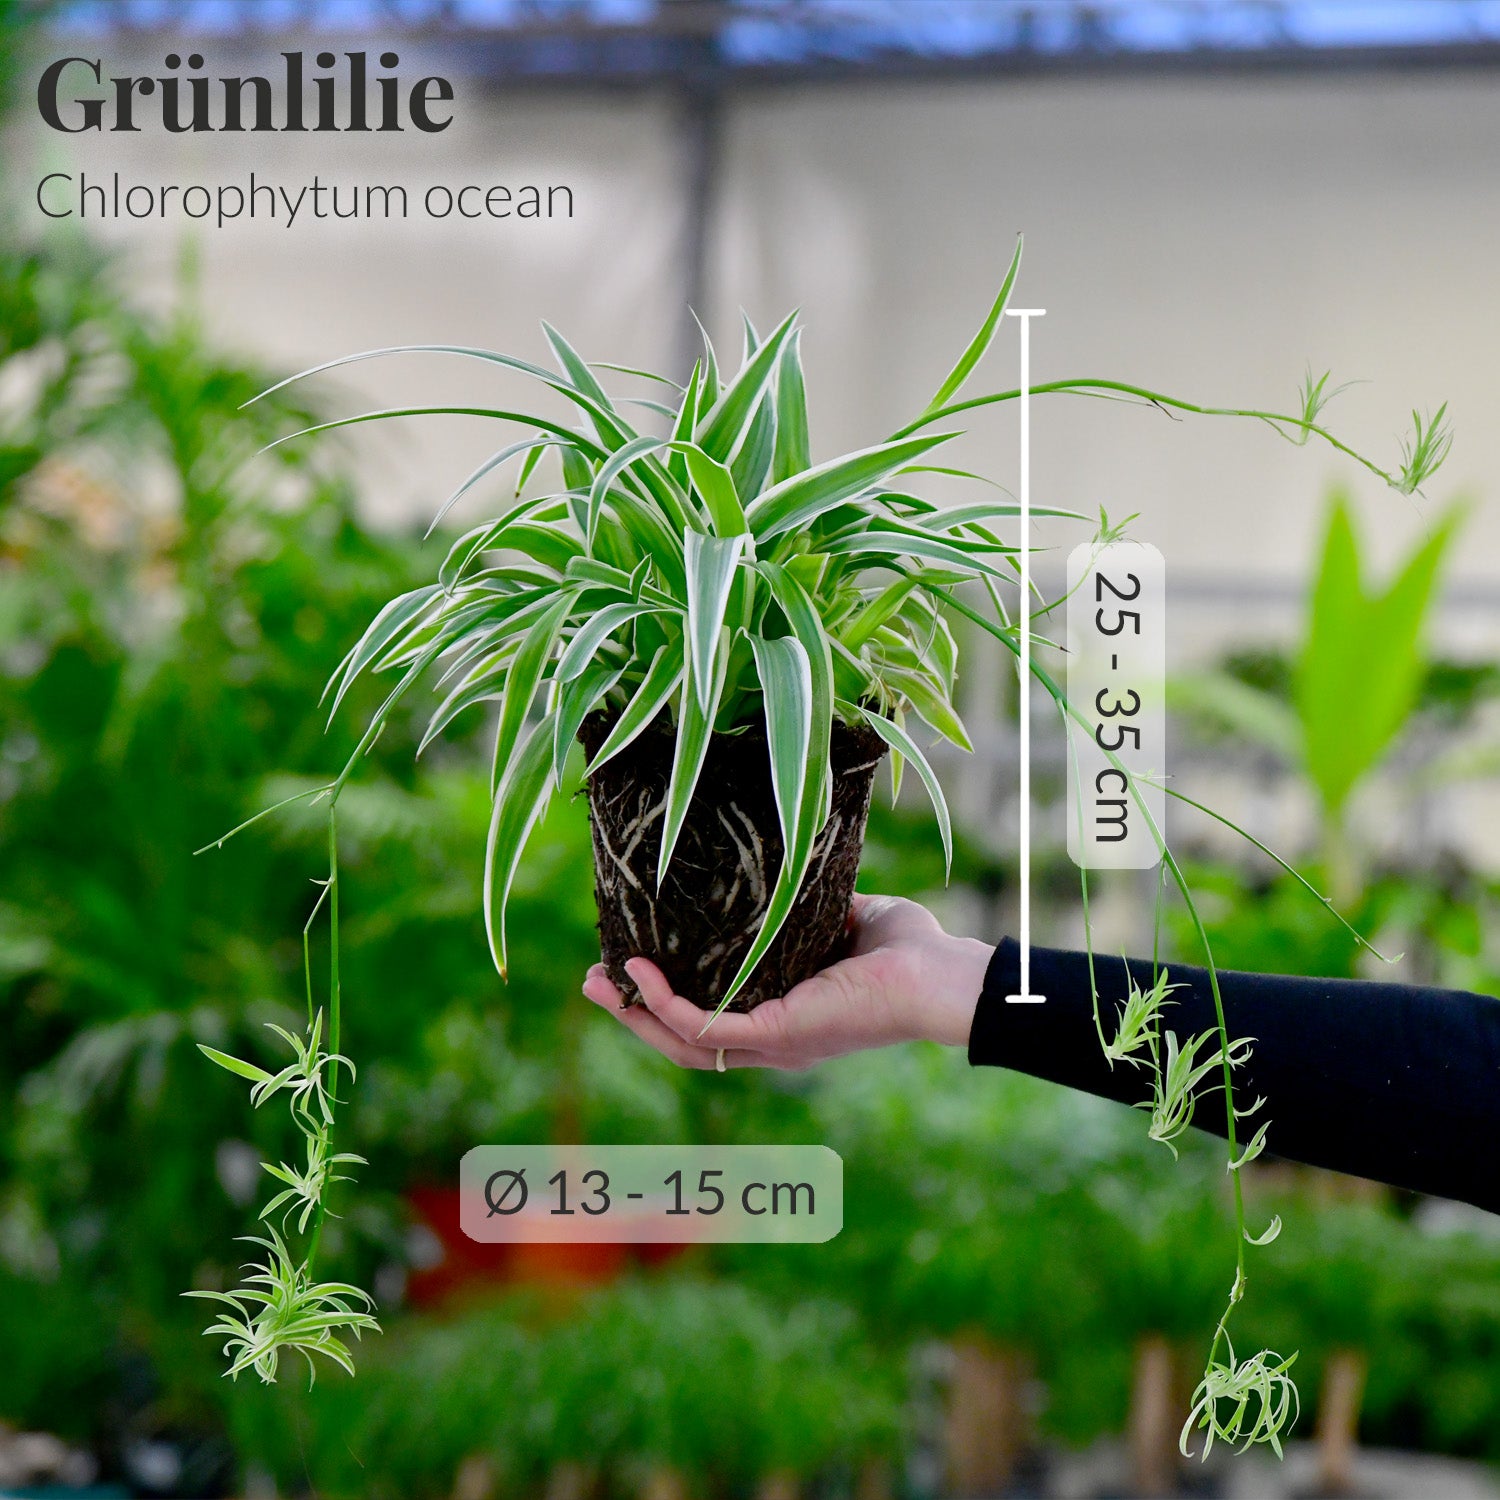 Grünlilie/Chlorophytum mit Maßangaben frisch vom Gärtner